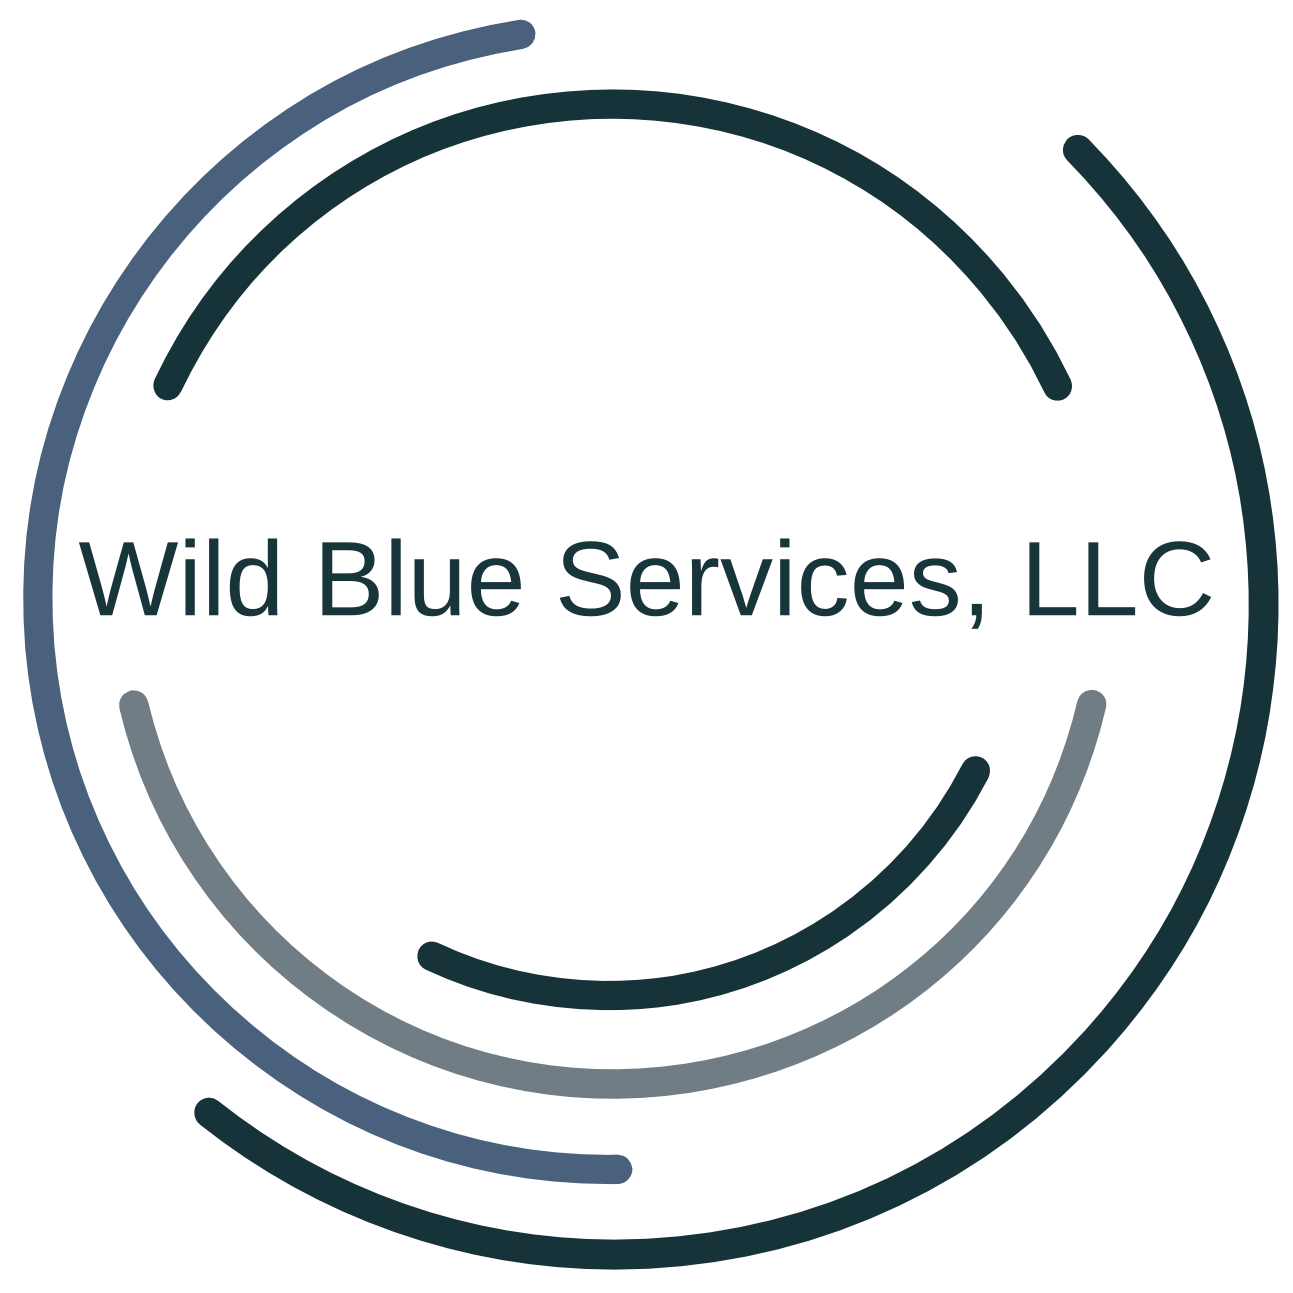 Wild Blue Services, LLC